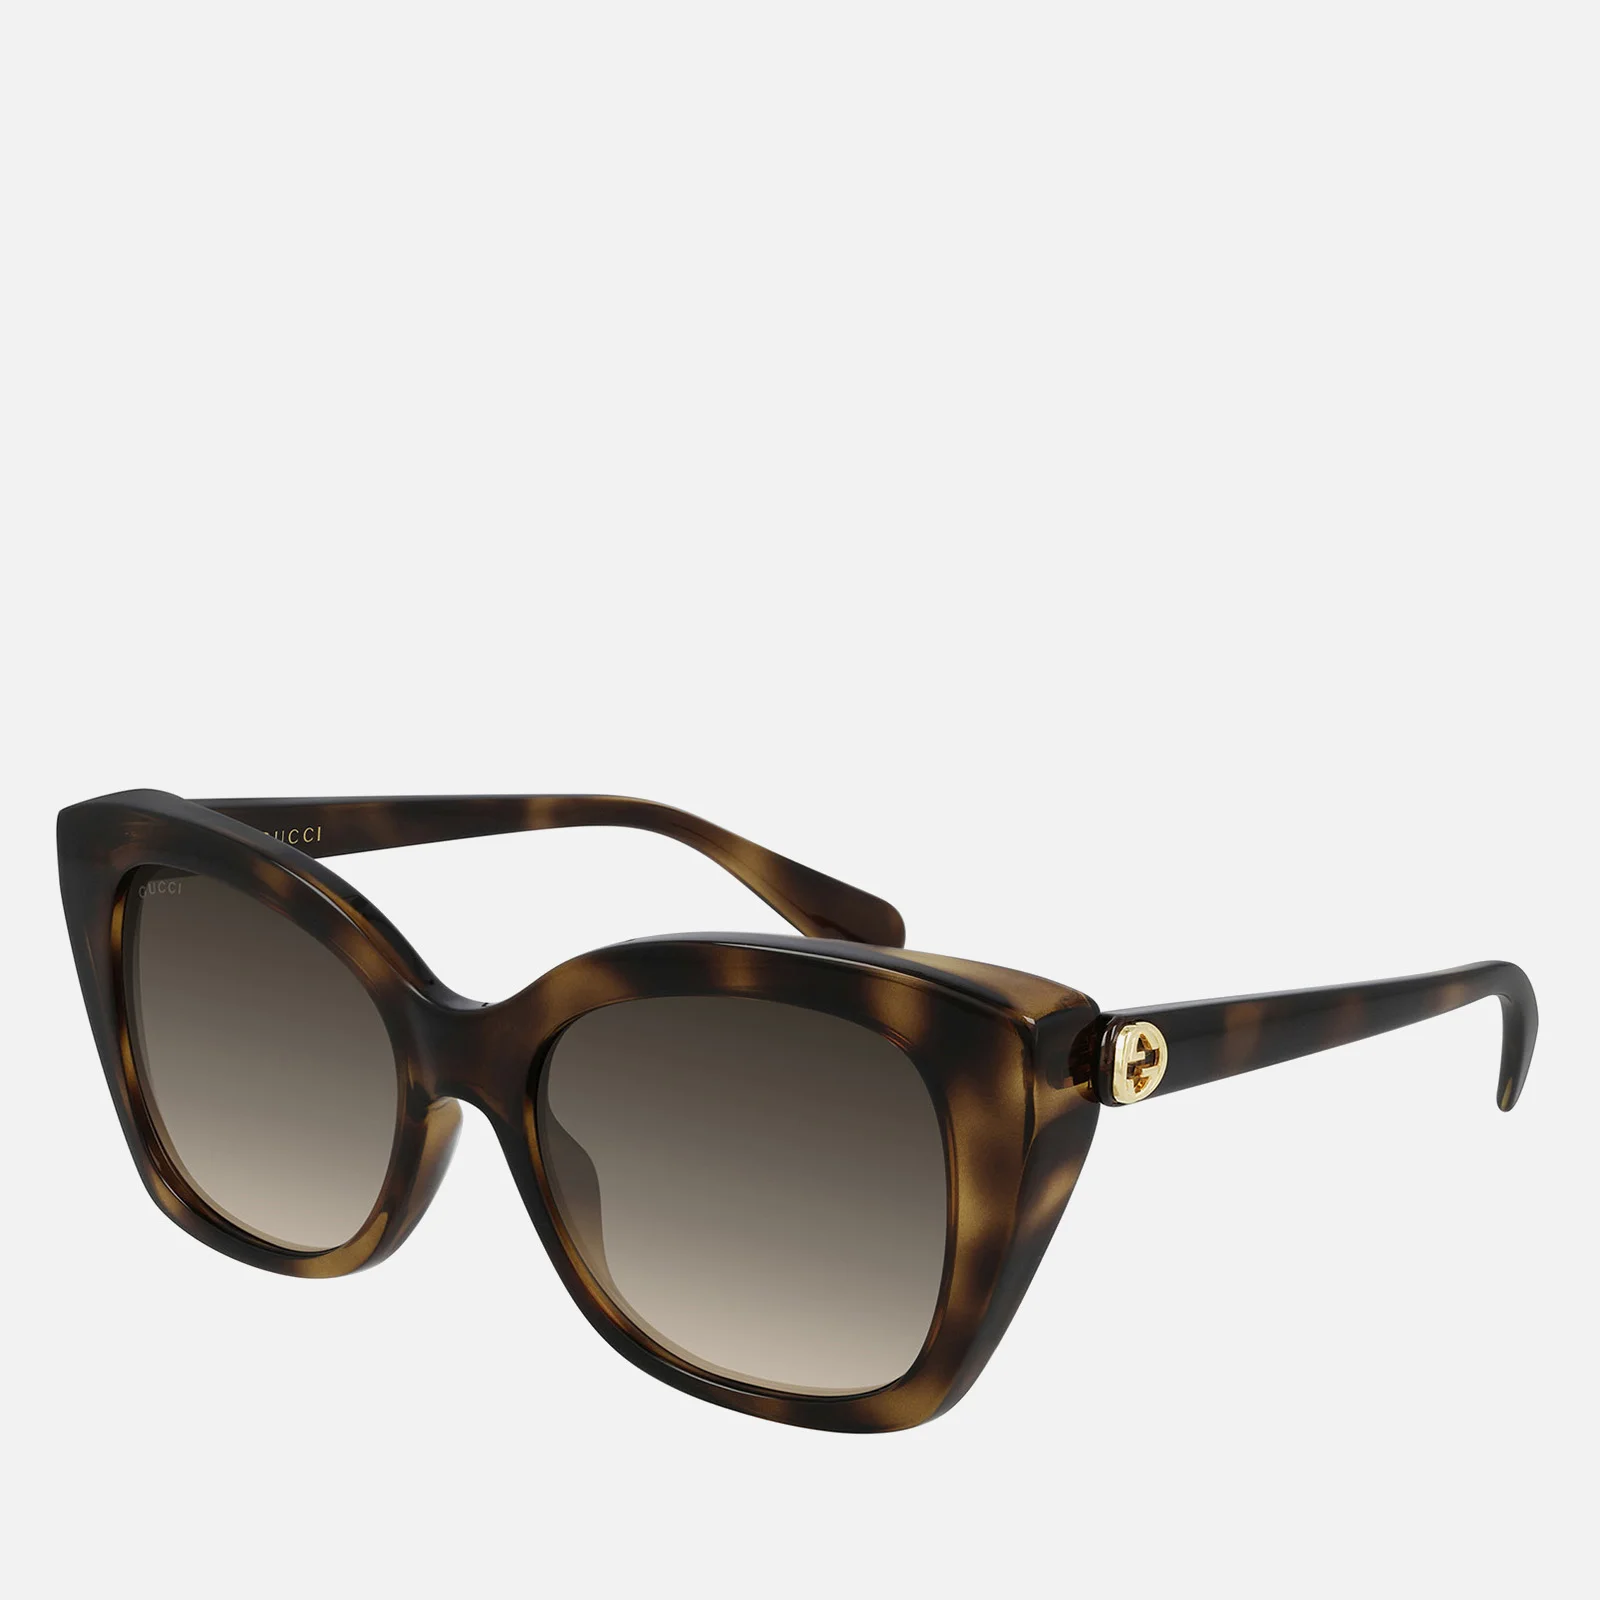 Gucci Women's Gradient Cat Eye Acetate Sunglasses - Havana/Havana/Brown Image 1